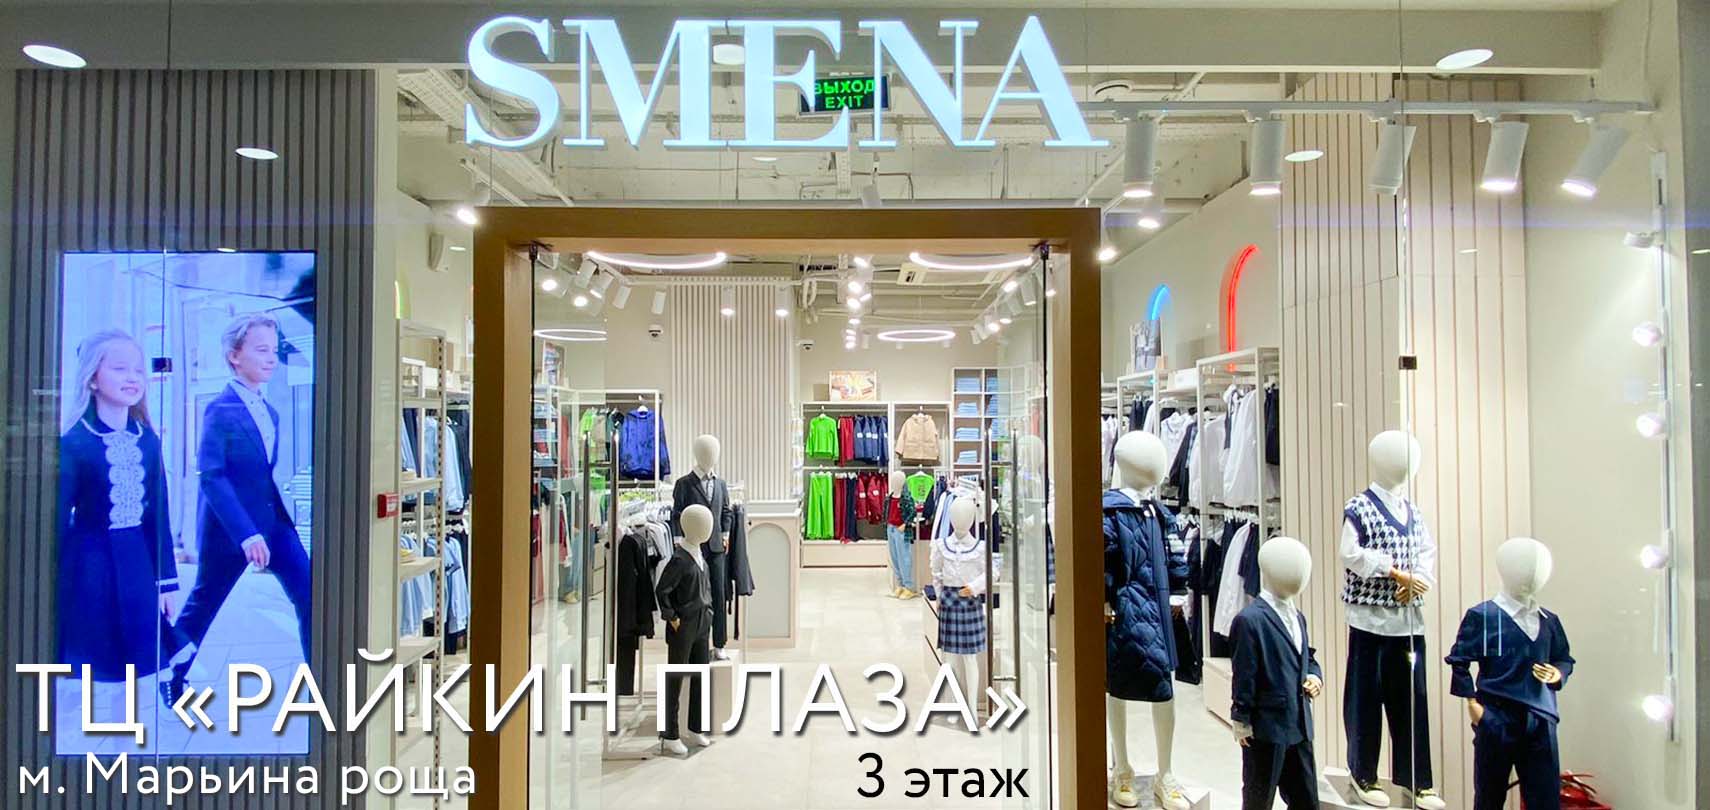 Новый магазин SMENA в ТЦ "Райкин Плаза"!